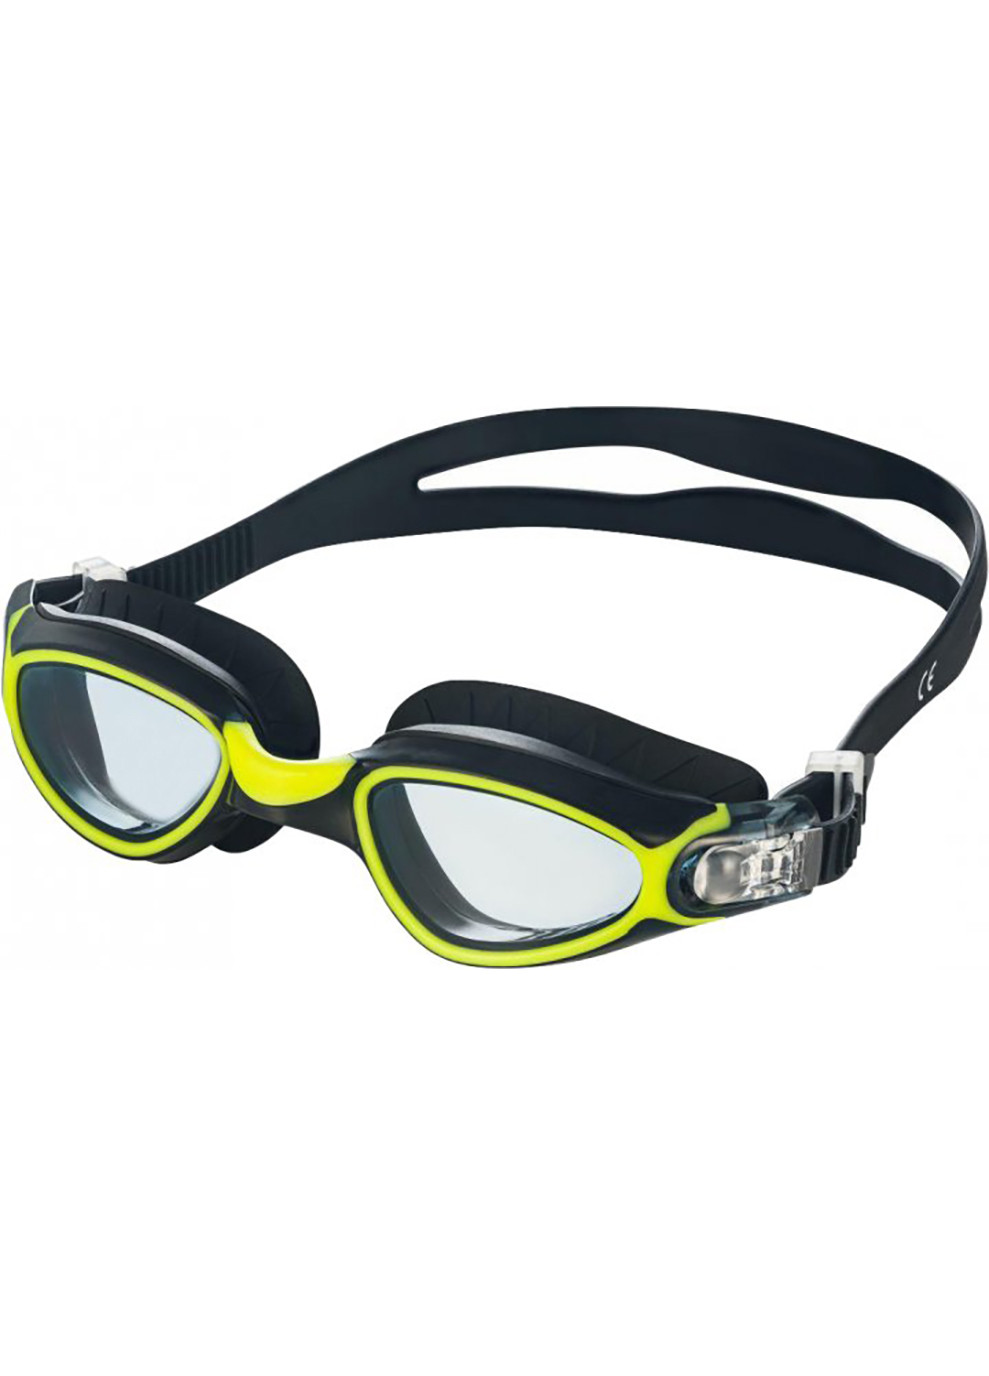 Окуляри для плавання CALYPSO 6369 чорні, жовті (unisex) OSFM 083-38 Aqua Speed (259215269)